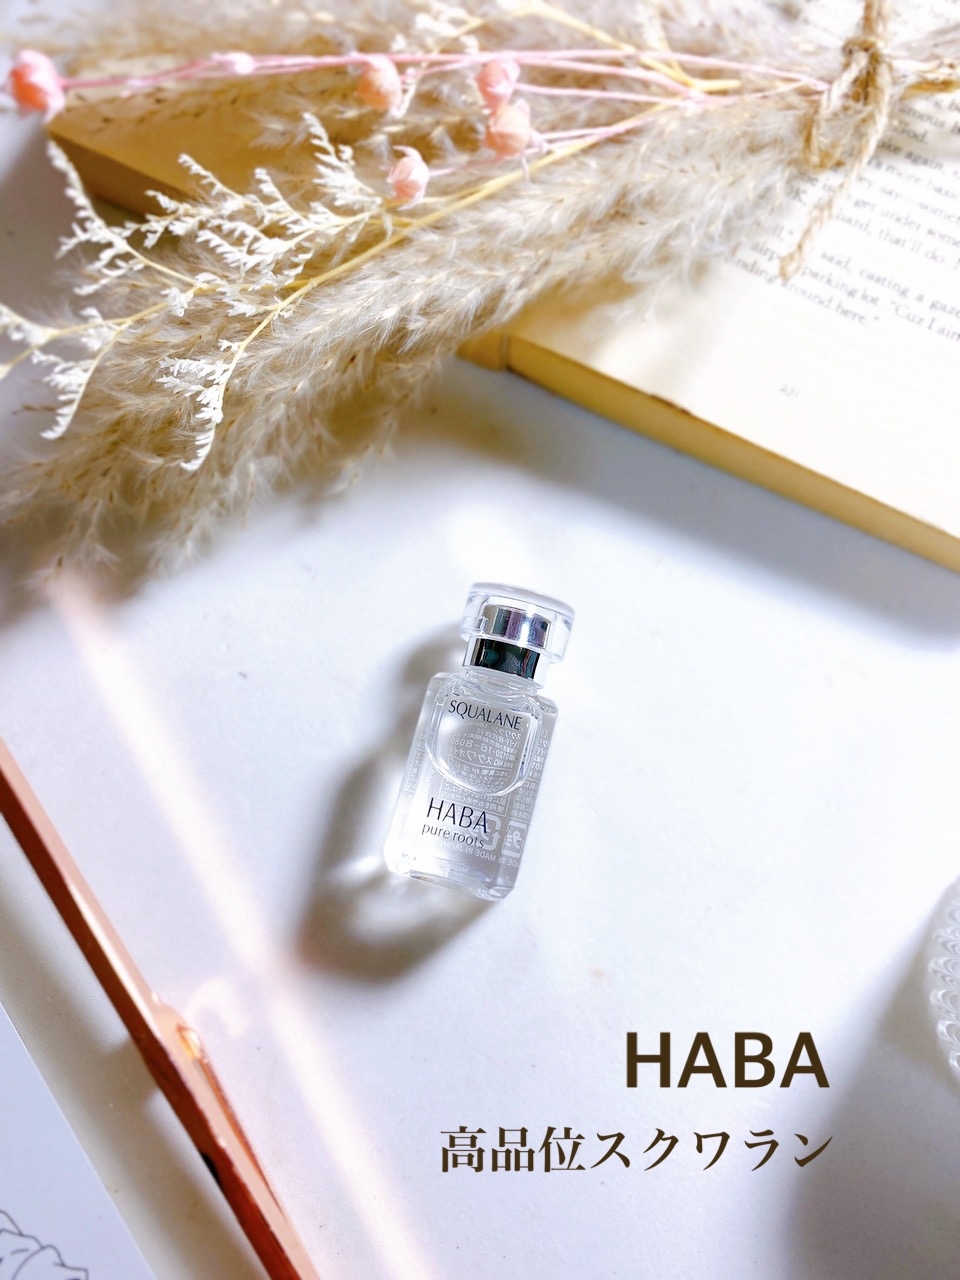 HABA(ハーバー) はじめてのスクワランケアセットの良い点・メリットに関する日高あきさんの口コミ画像1